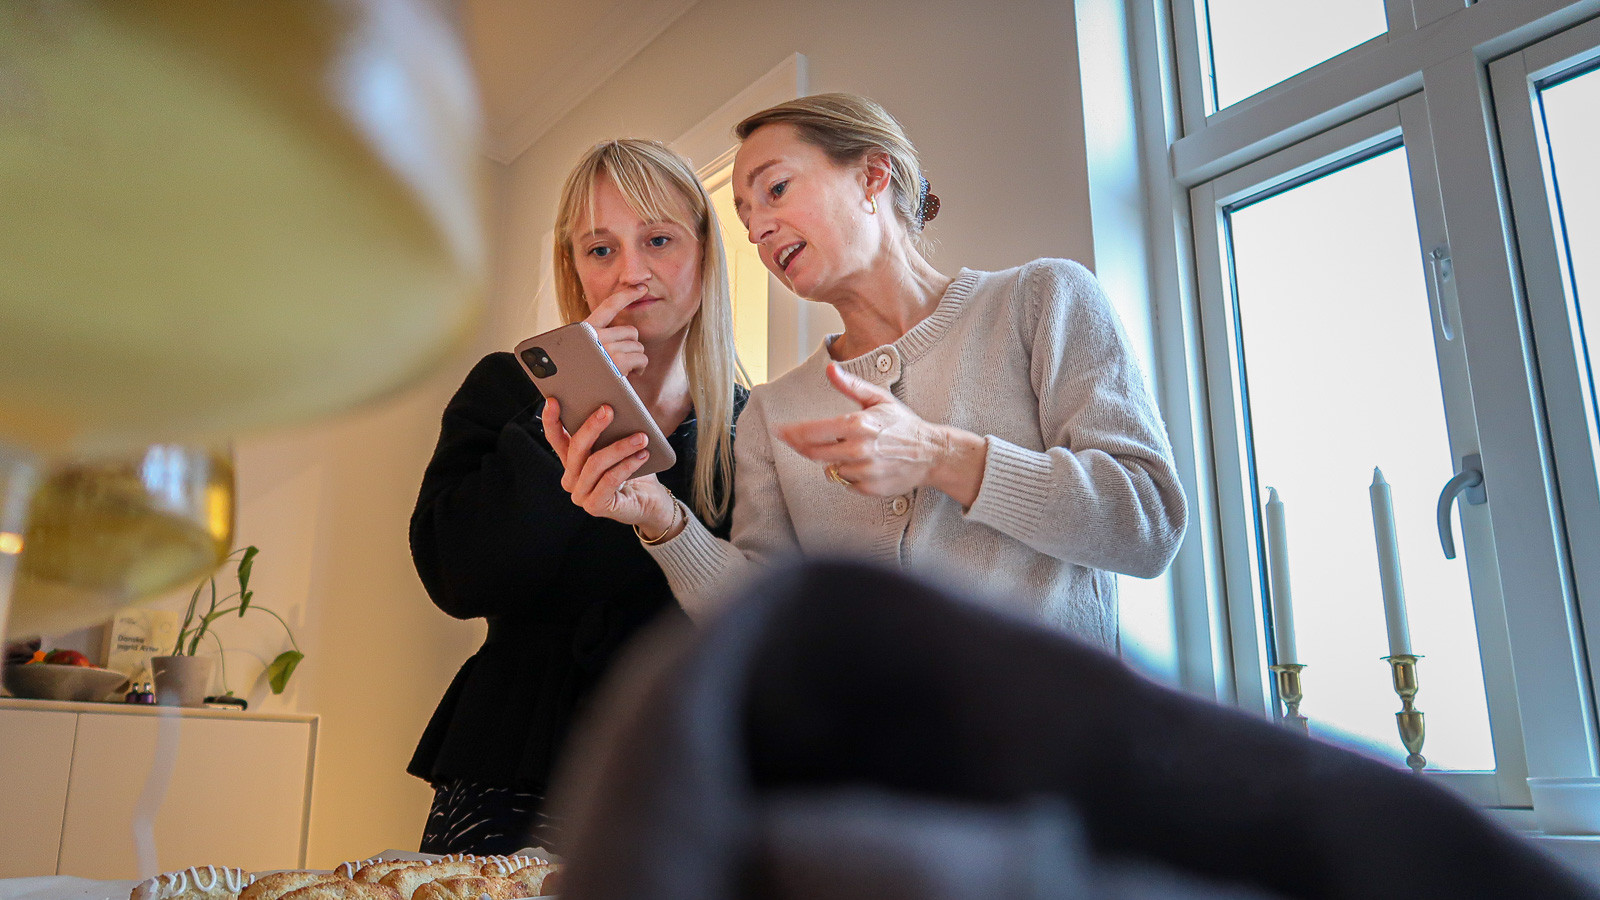 Astrid (t.v.) og Malene Søgaard er blandt de nominerede til prisen som Årets Grønne Iværksætter, der uddeles d. 24. november af Dansk Vegetarisk Forening